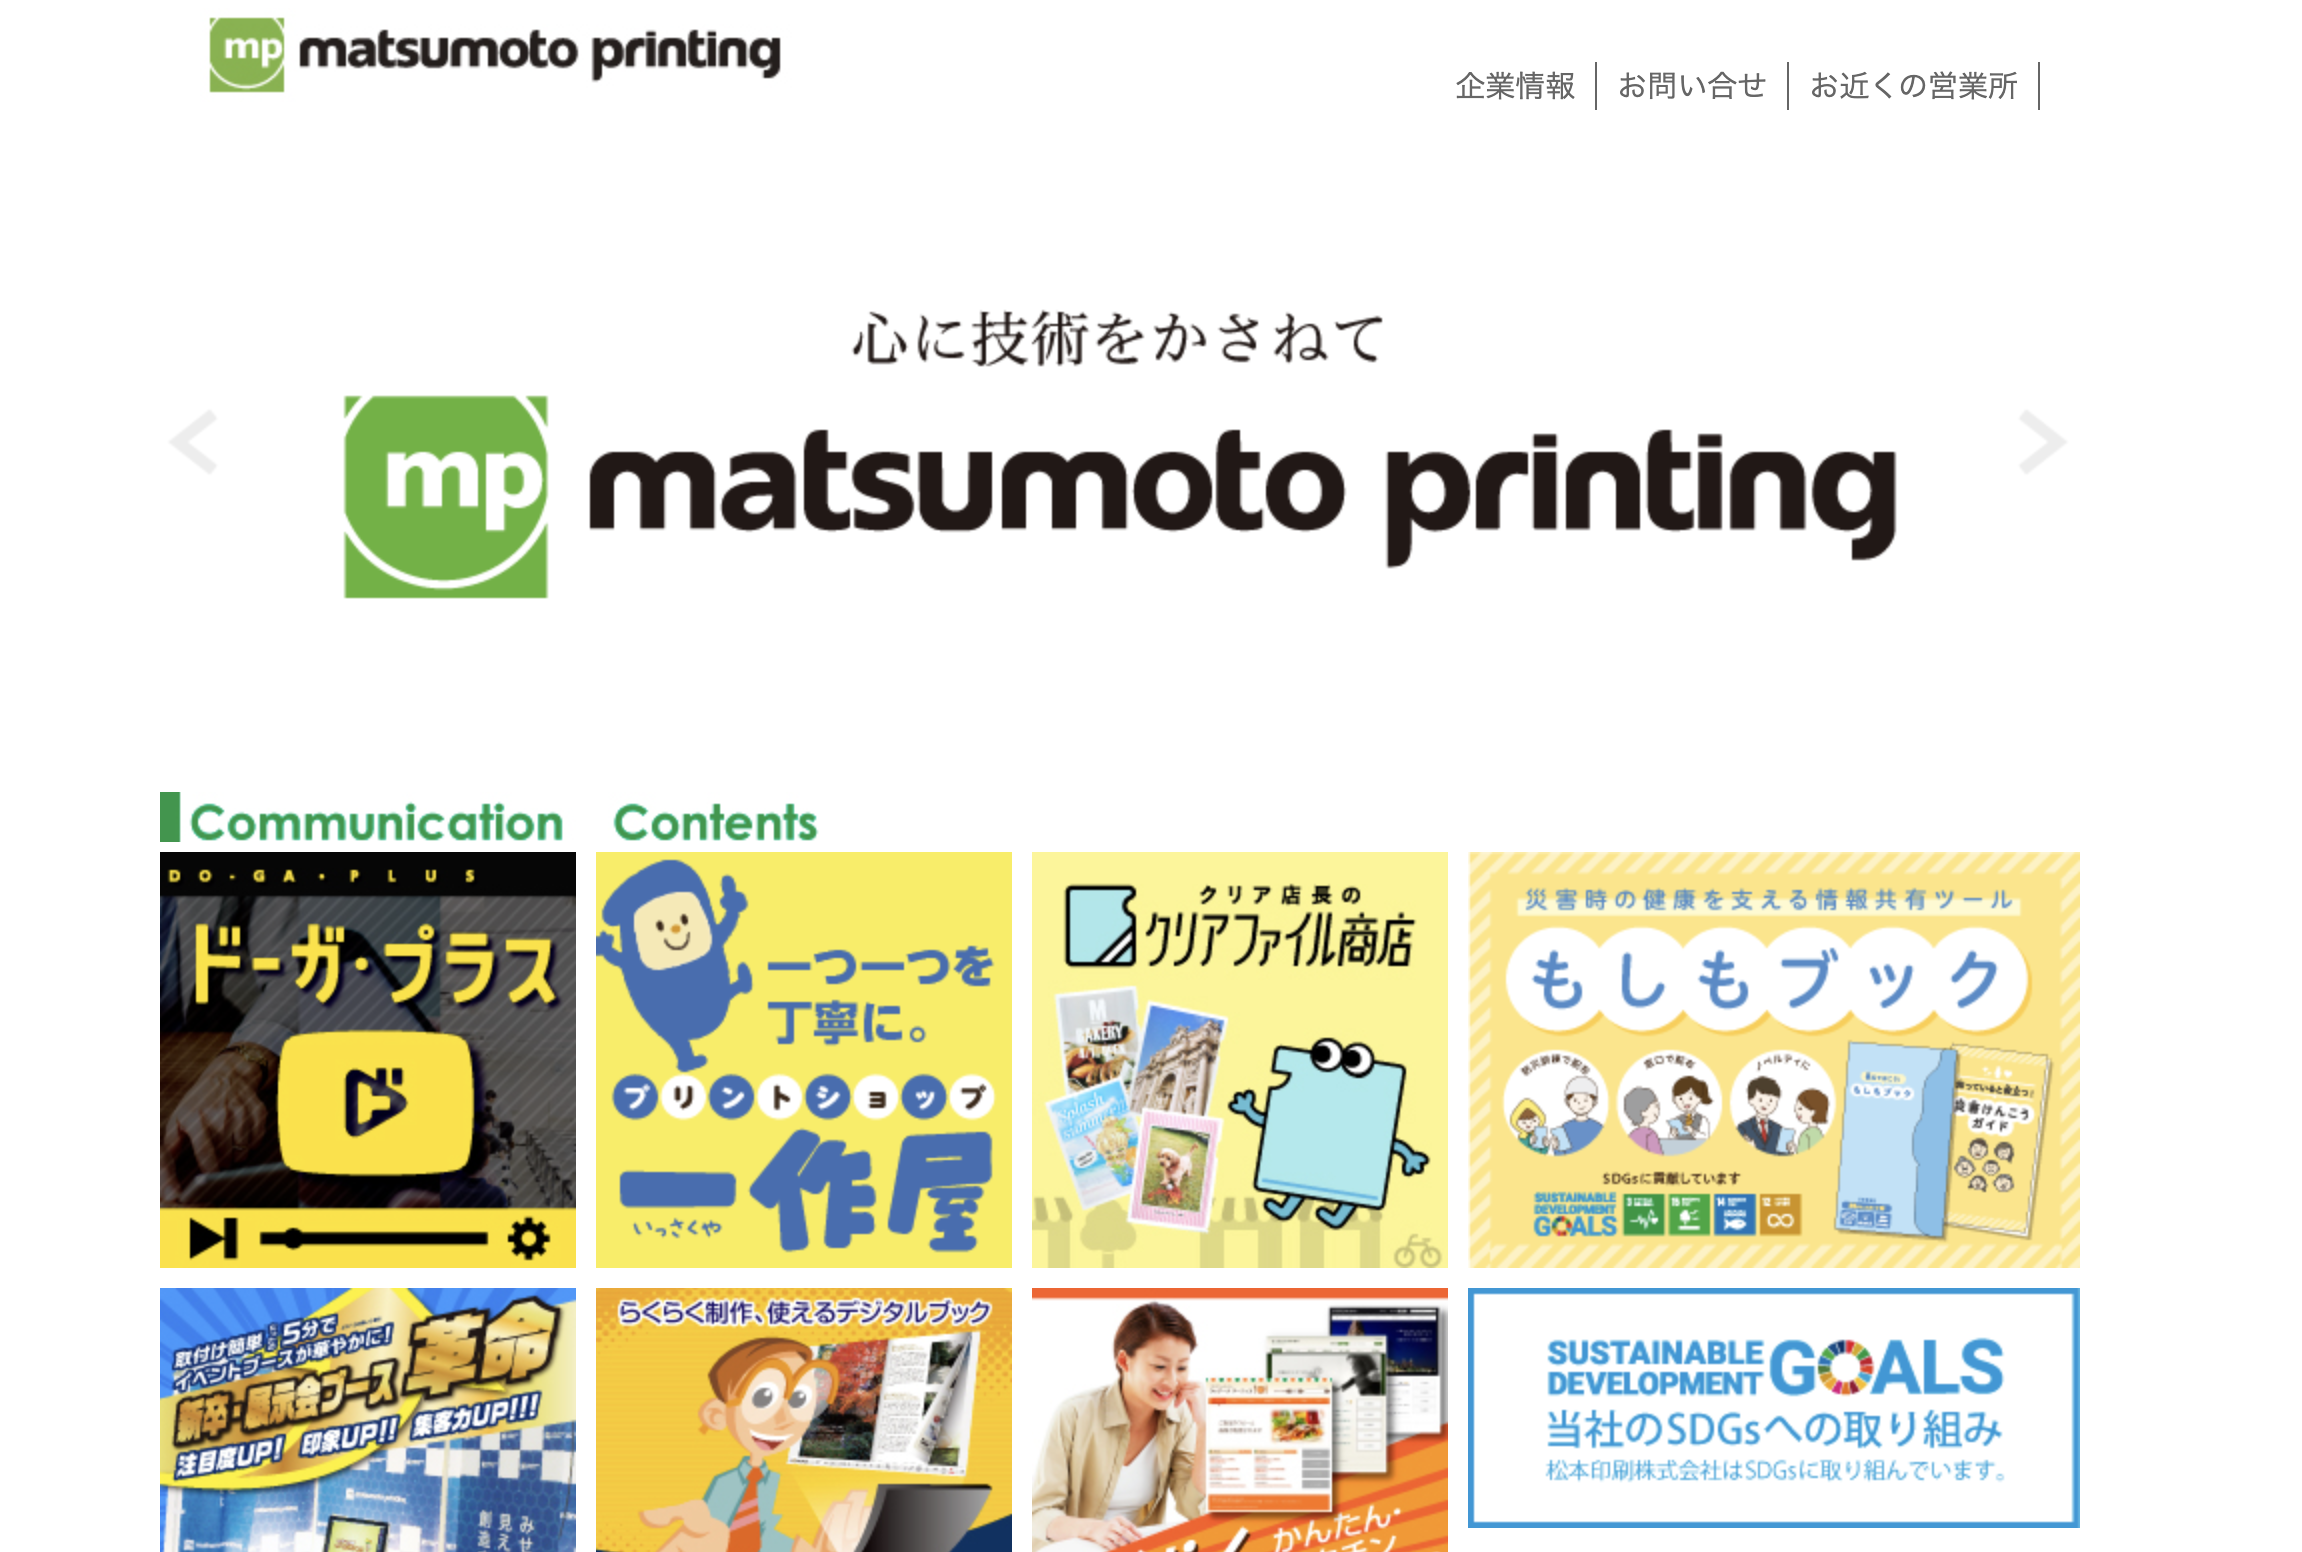 松本印刷株式会社の松本印刷株式会社:デザイン制作サービス